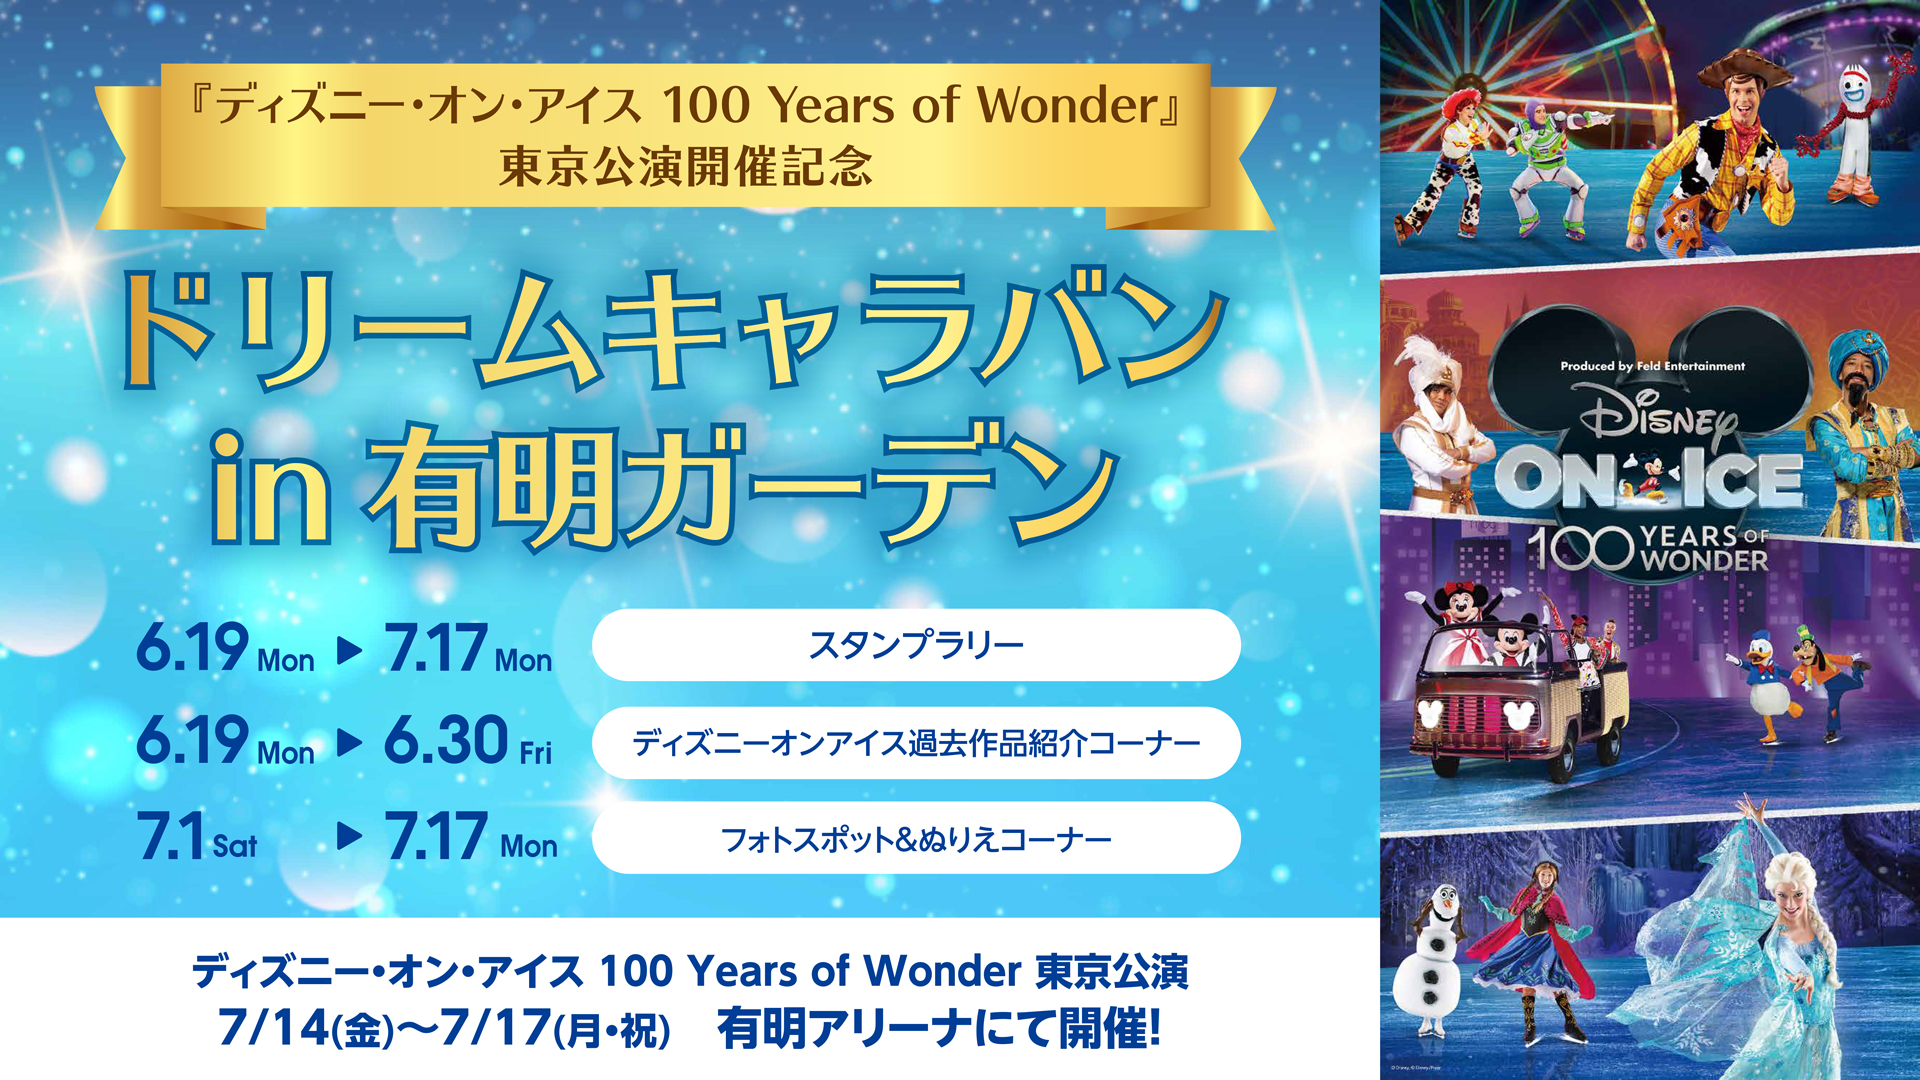 ディズニー・オン・アイス 100 Years of Wonder』公演を記念した 